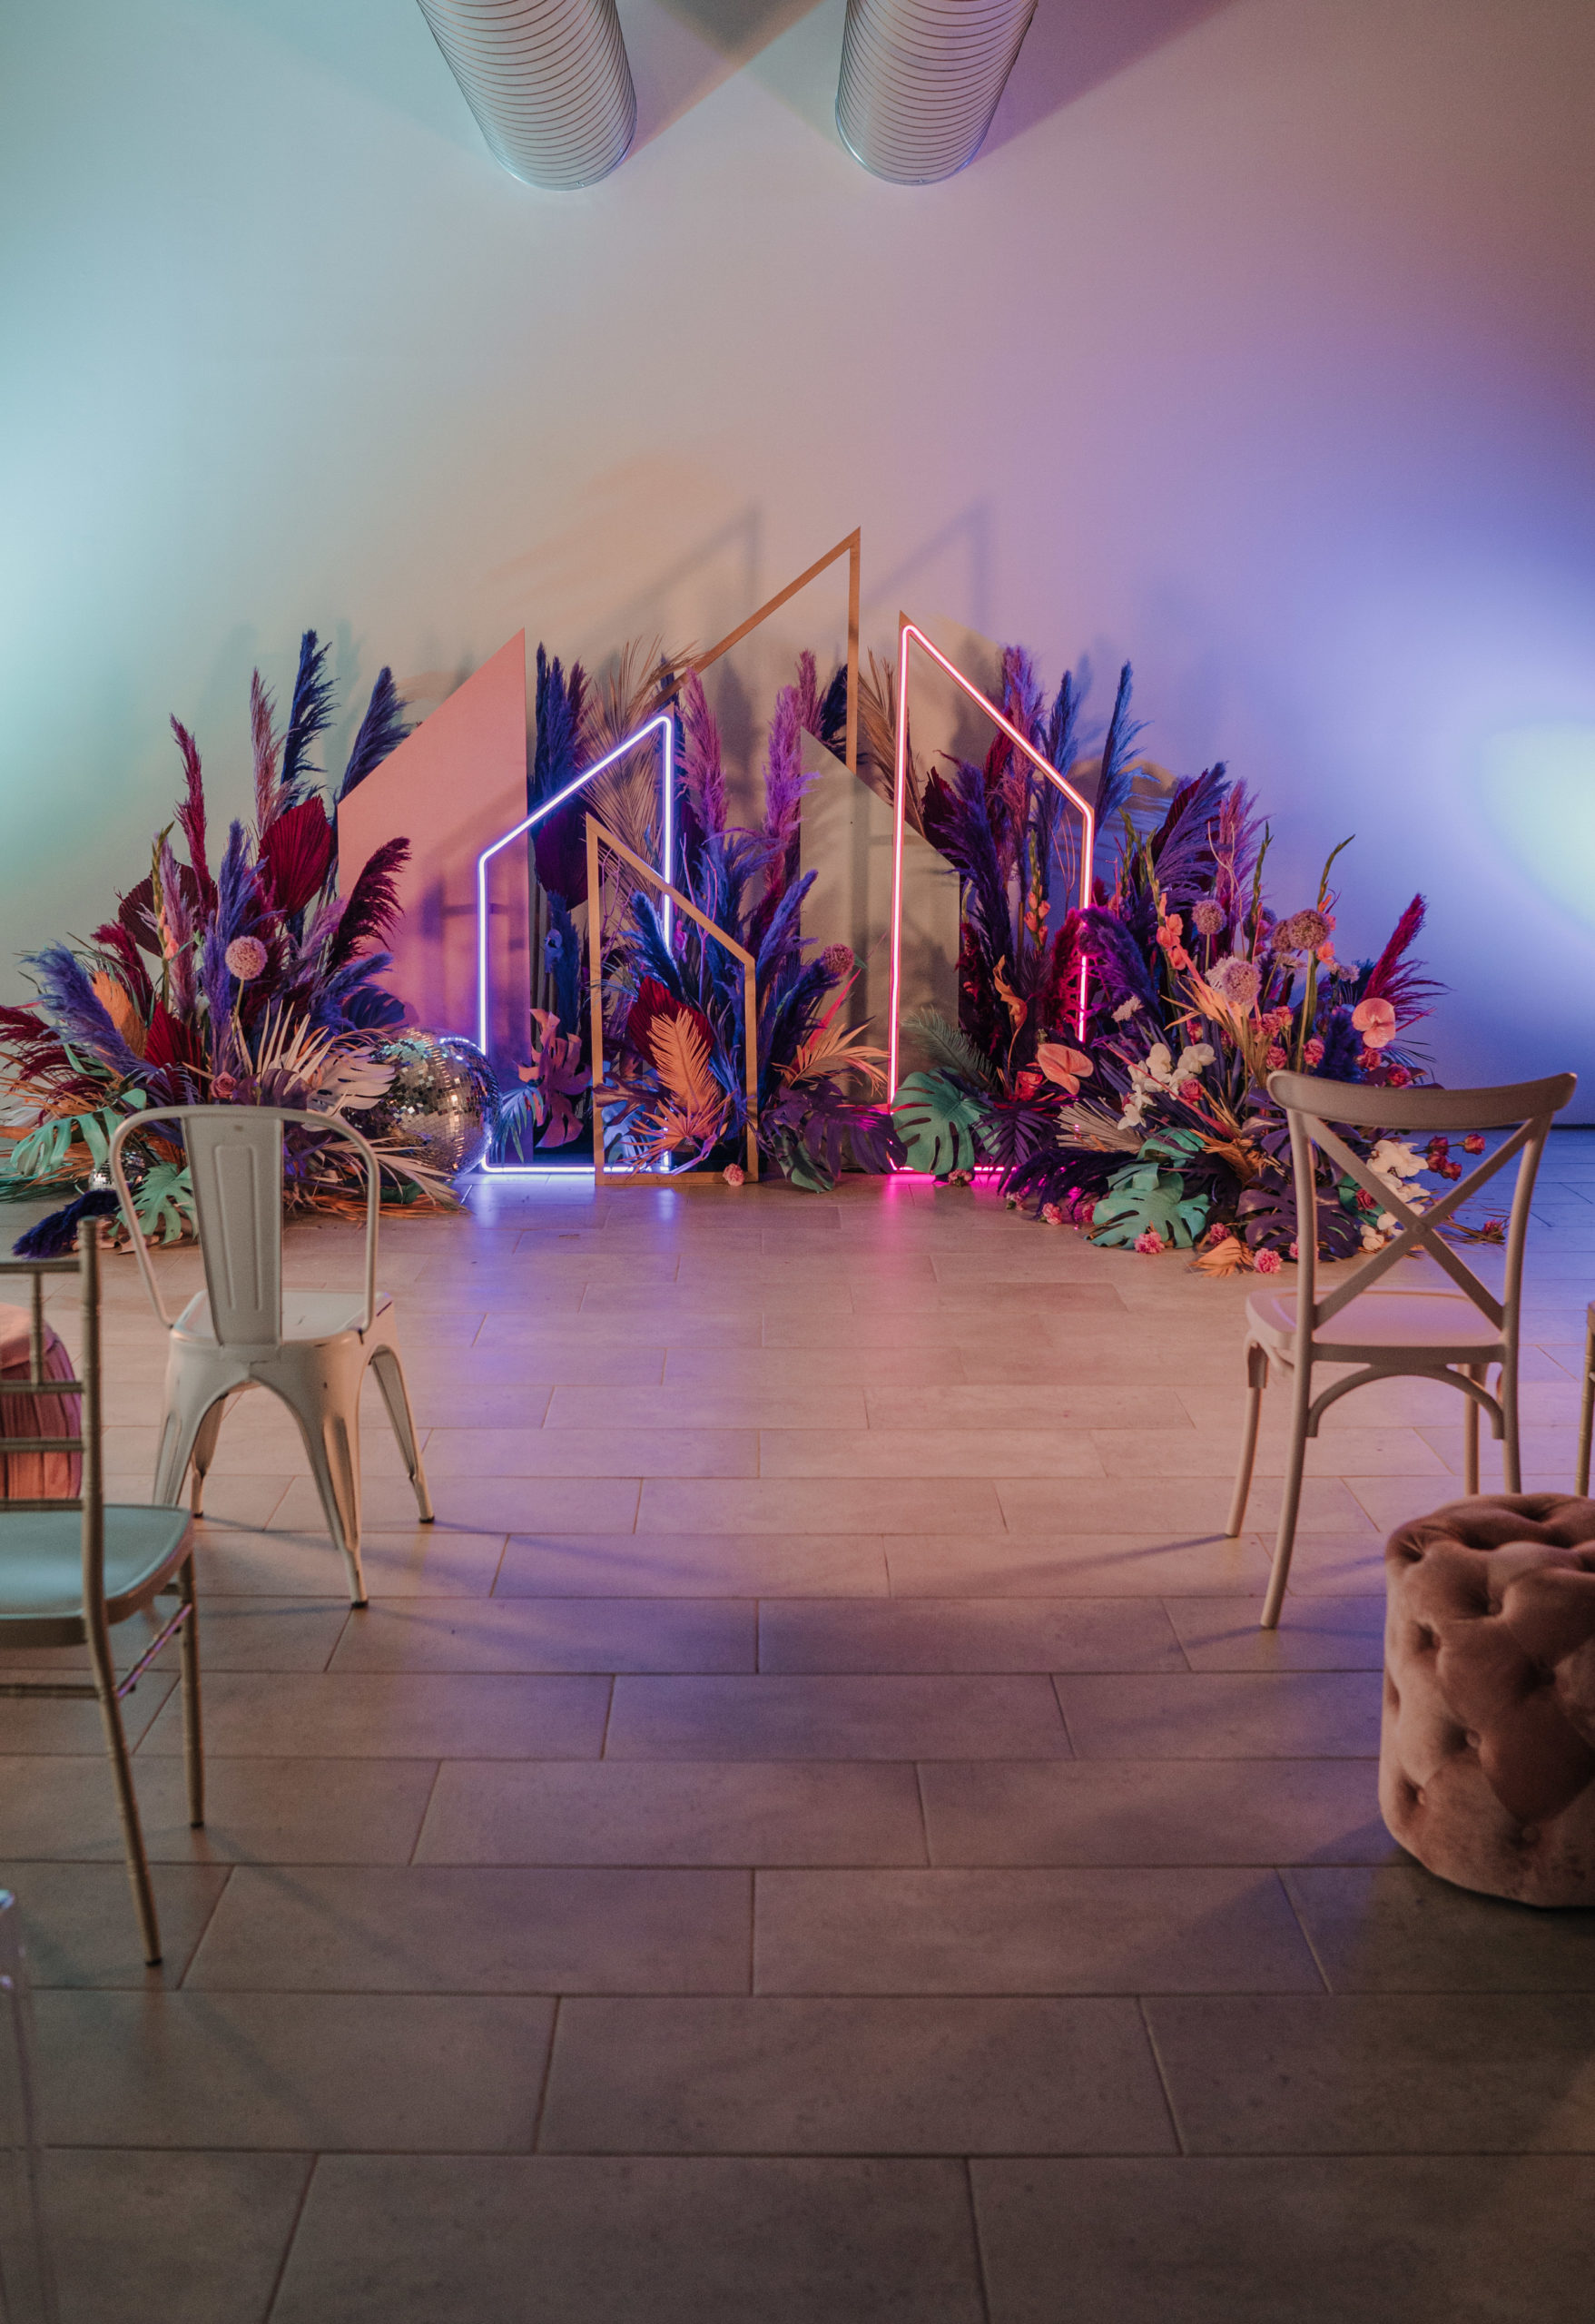 Ceremonia nupcial colorida con flores, sillas, taburetes y neones